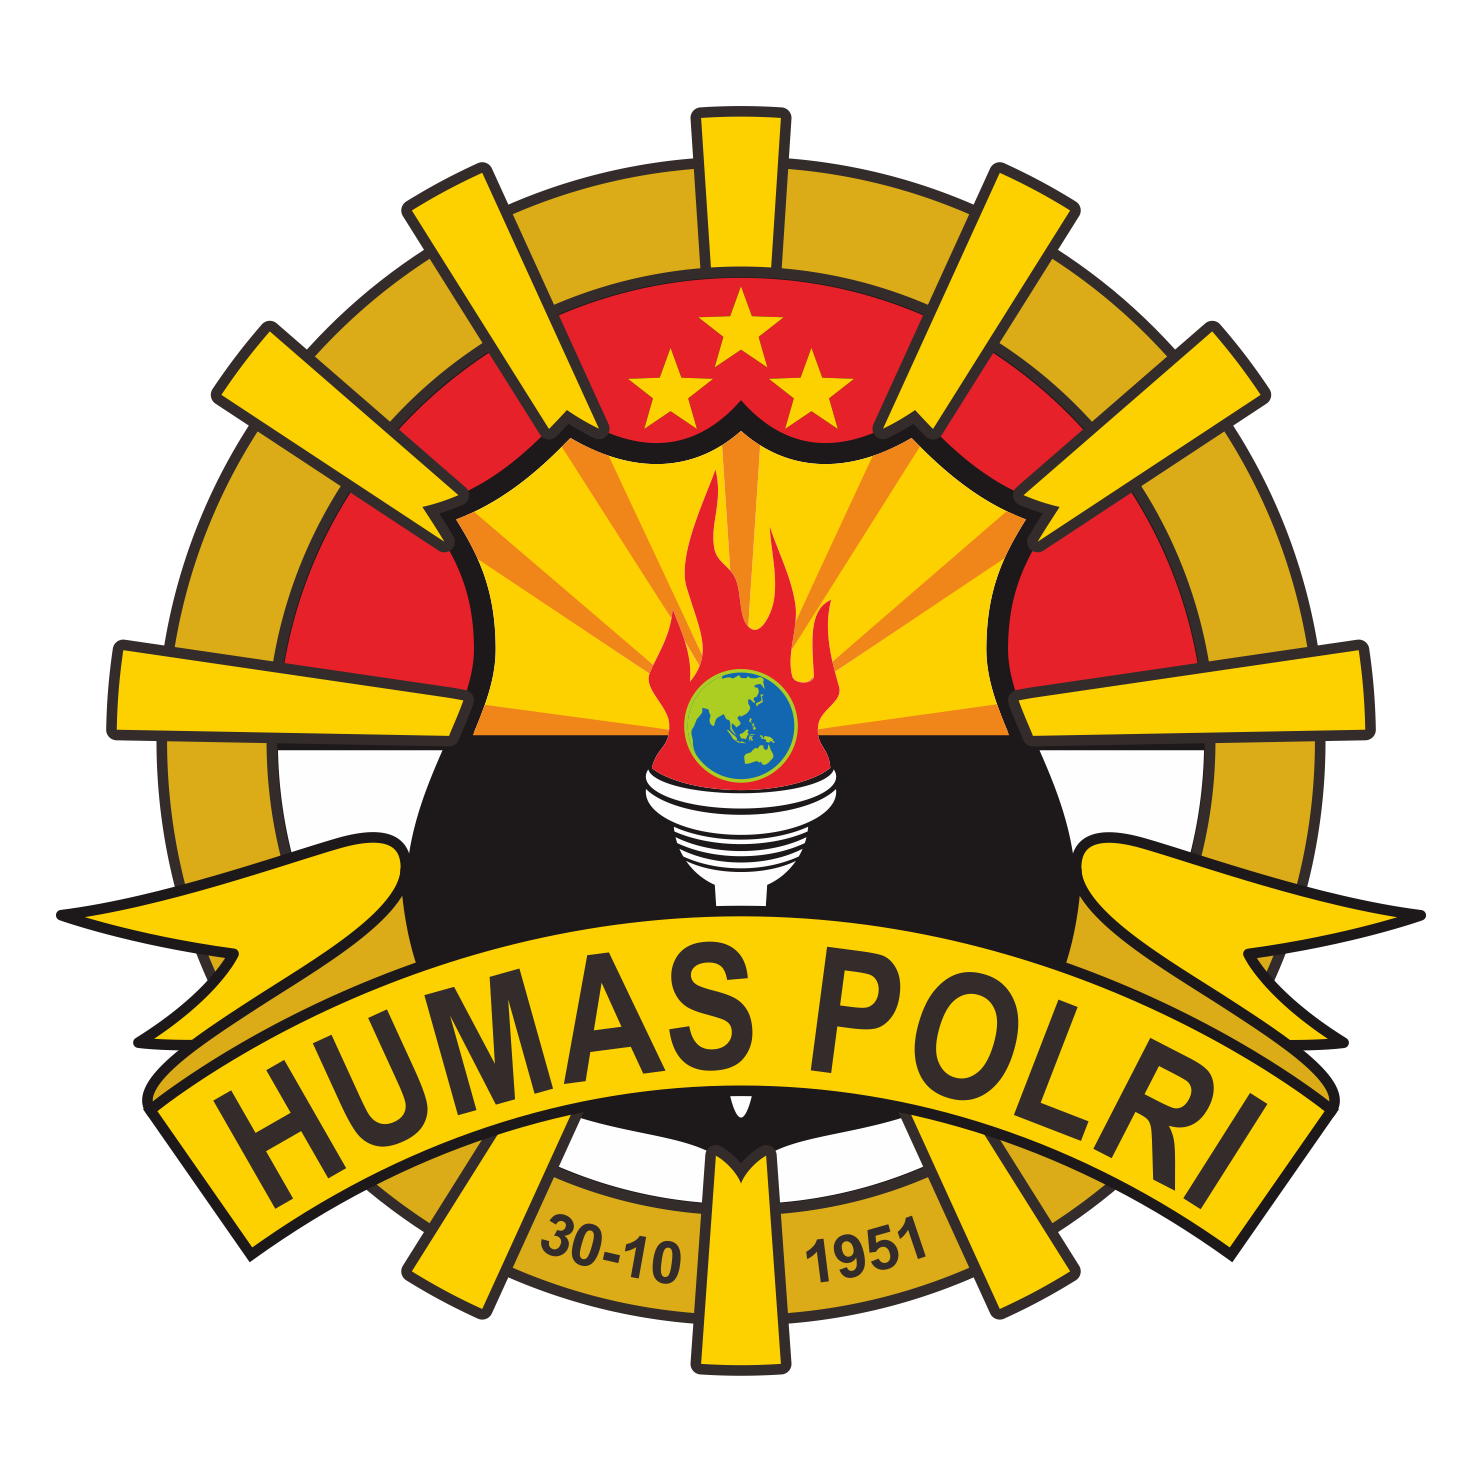 Download Logo  Divisi Humas Polri Terbaru Vektor CDR Mas Vian